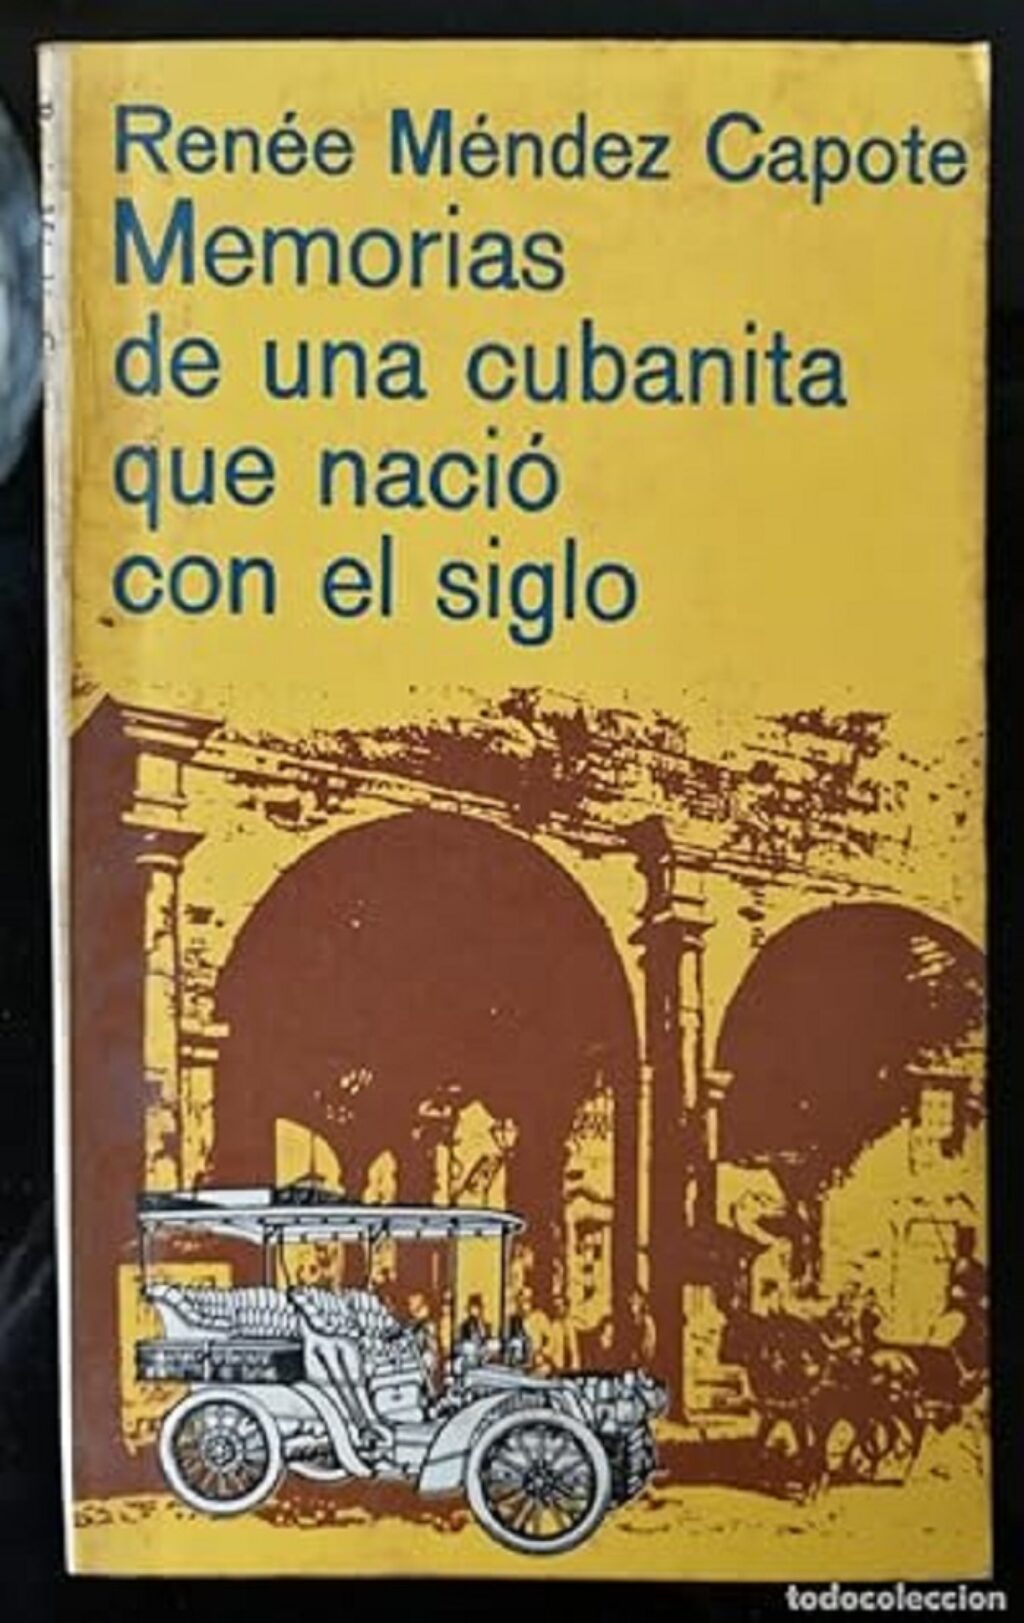 Portada de Memorias de una cubanita que nació con el siglo, (1964), de Renée Méndez-Capote.